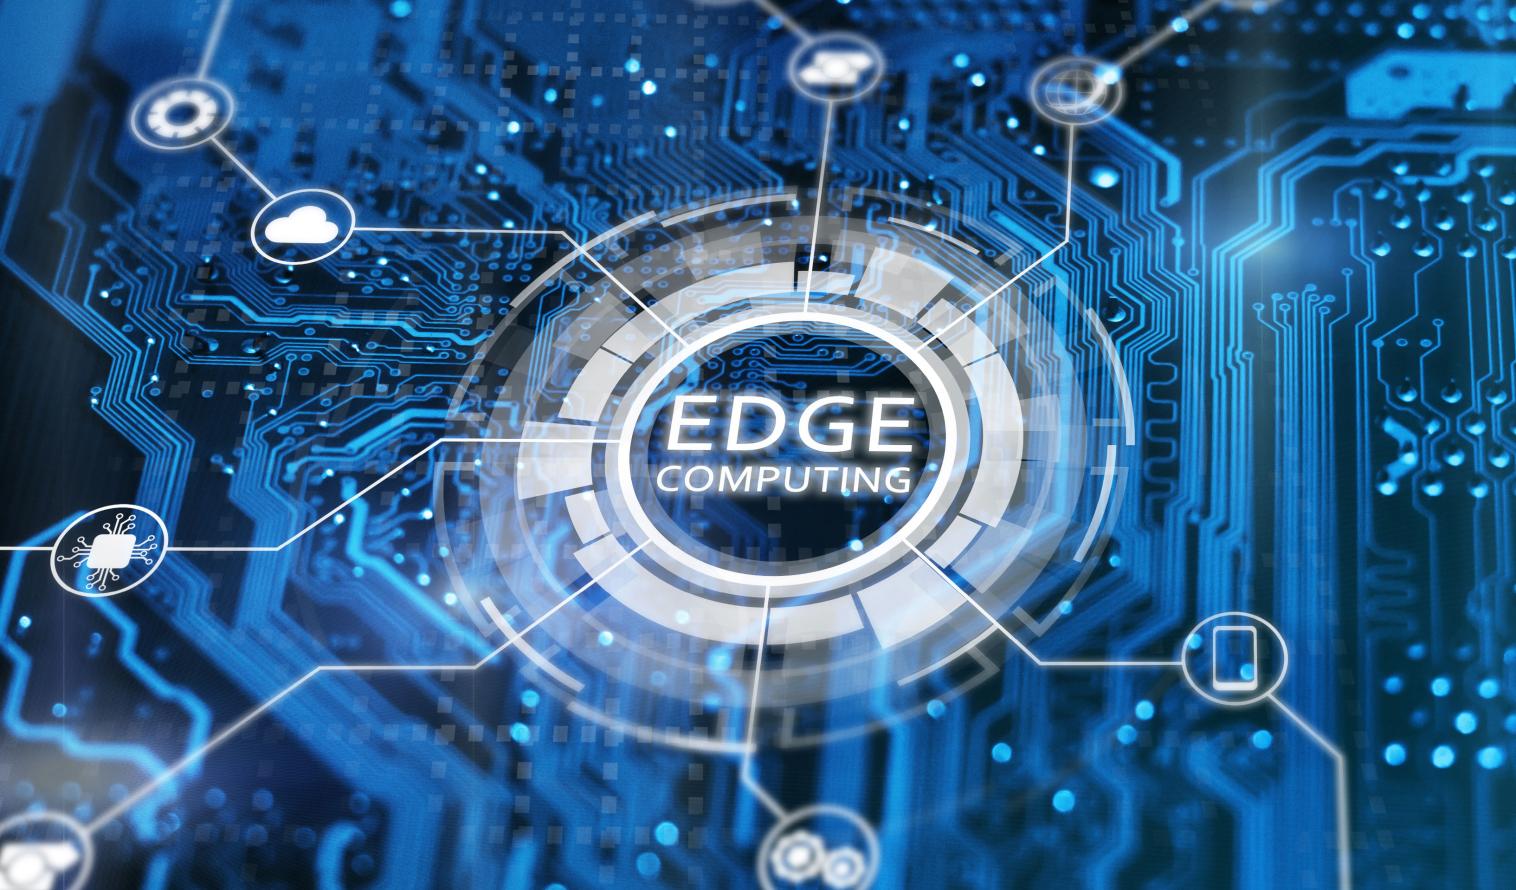 Konzept der Edge-Computing-Technologie. Blauer integrierter Schaltkreis mit Symbolen.